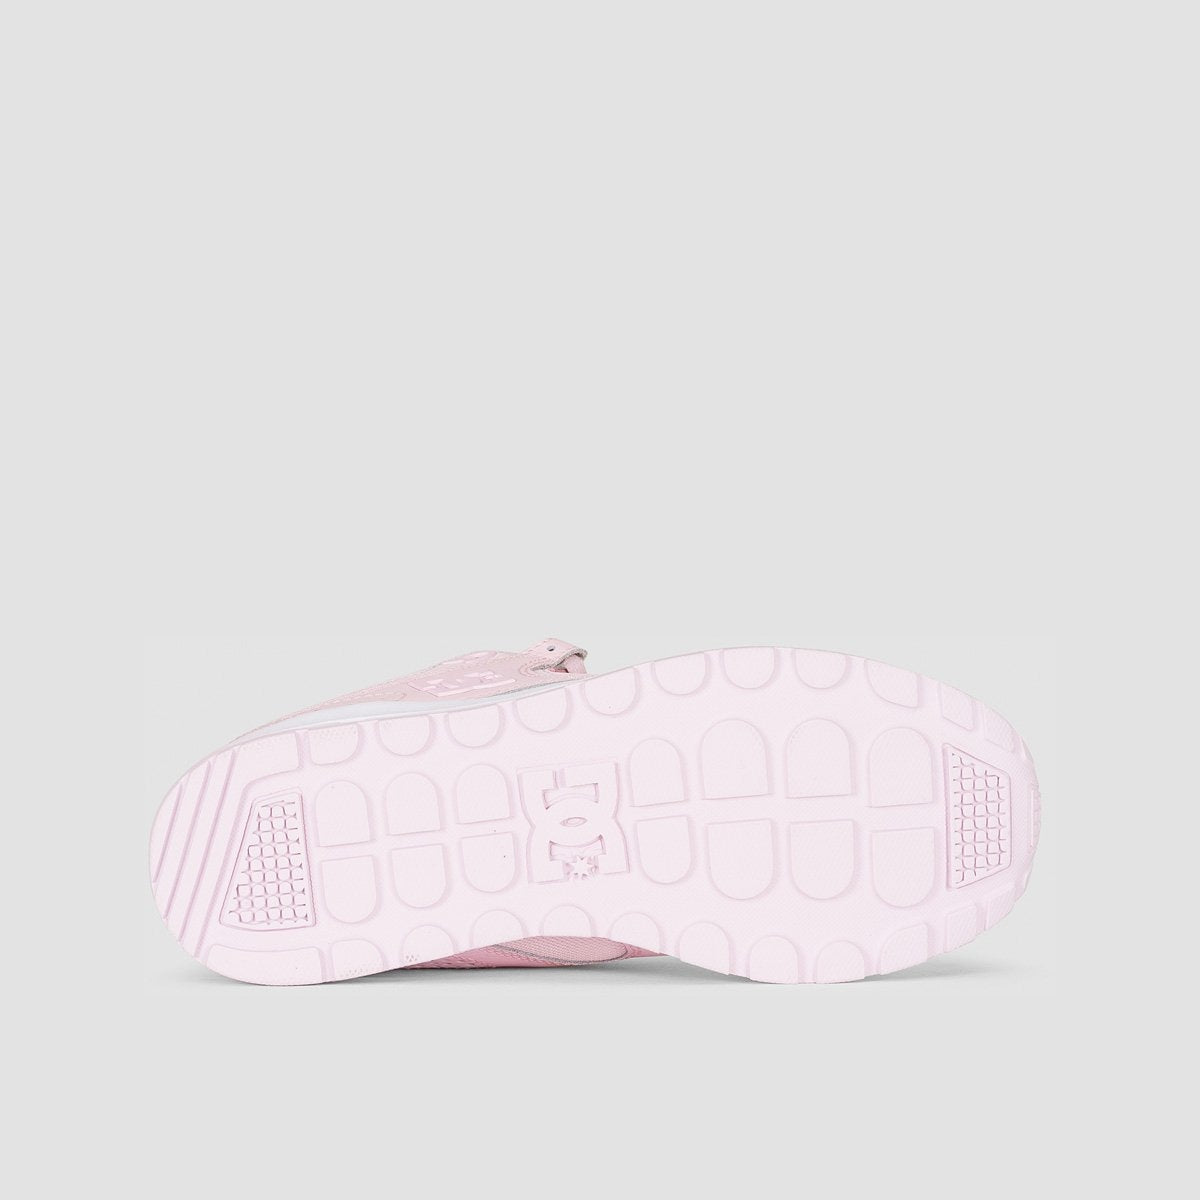 DC Kalis Lite Light Pink - Womens - Footwear